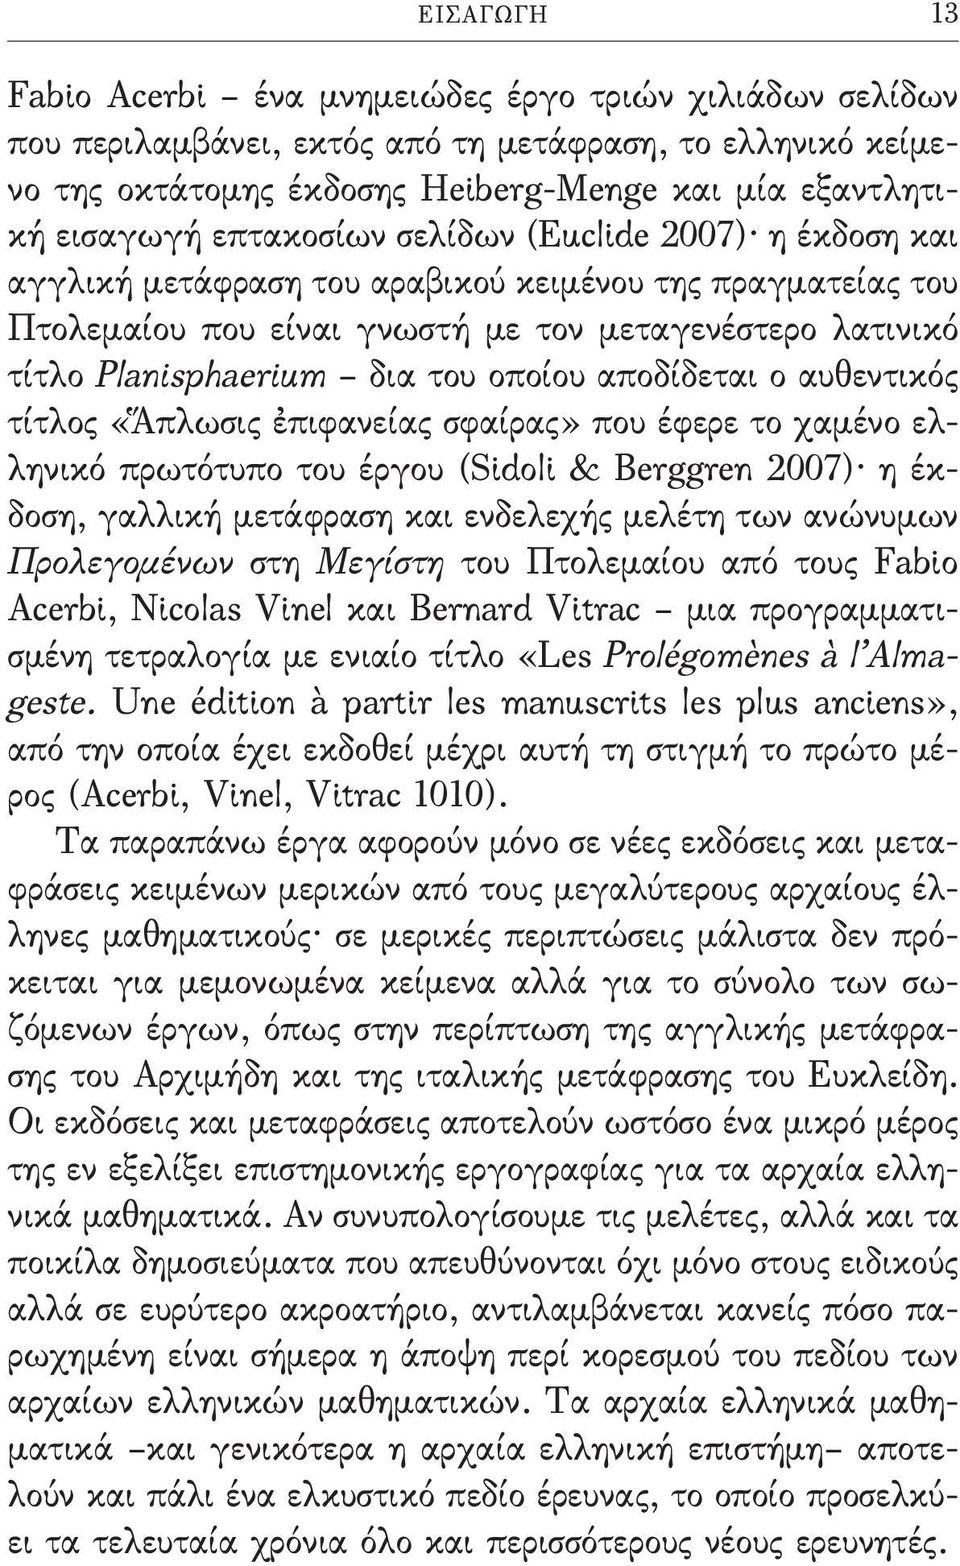 οποίου αποδίδεται ο αυθεντικός τίτλος «Ἅπλωσις ἐπιφανείας σφαίρας» που έφερε το χαμένο ελληνικό πρωτότυπο του έργου (Sidoli & Berggren 2007) η έκδοση, γαλλική μετάφραση και ενδελεχής μελέτη των